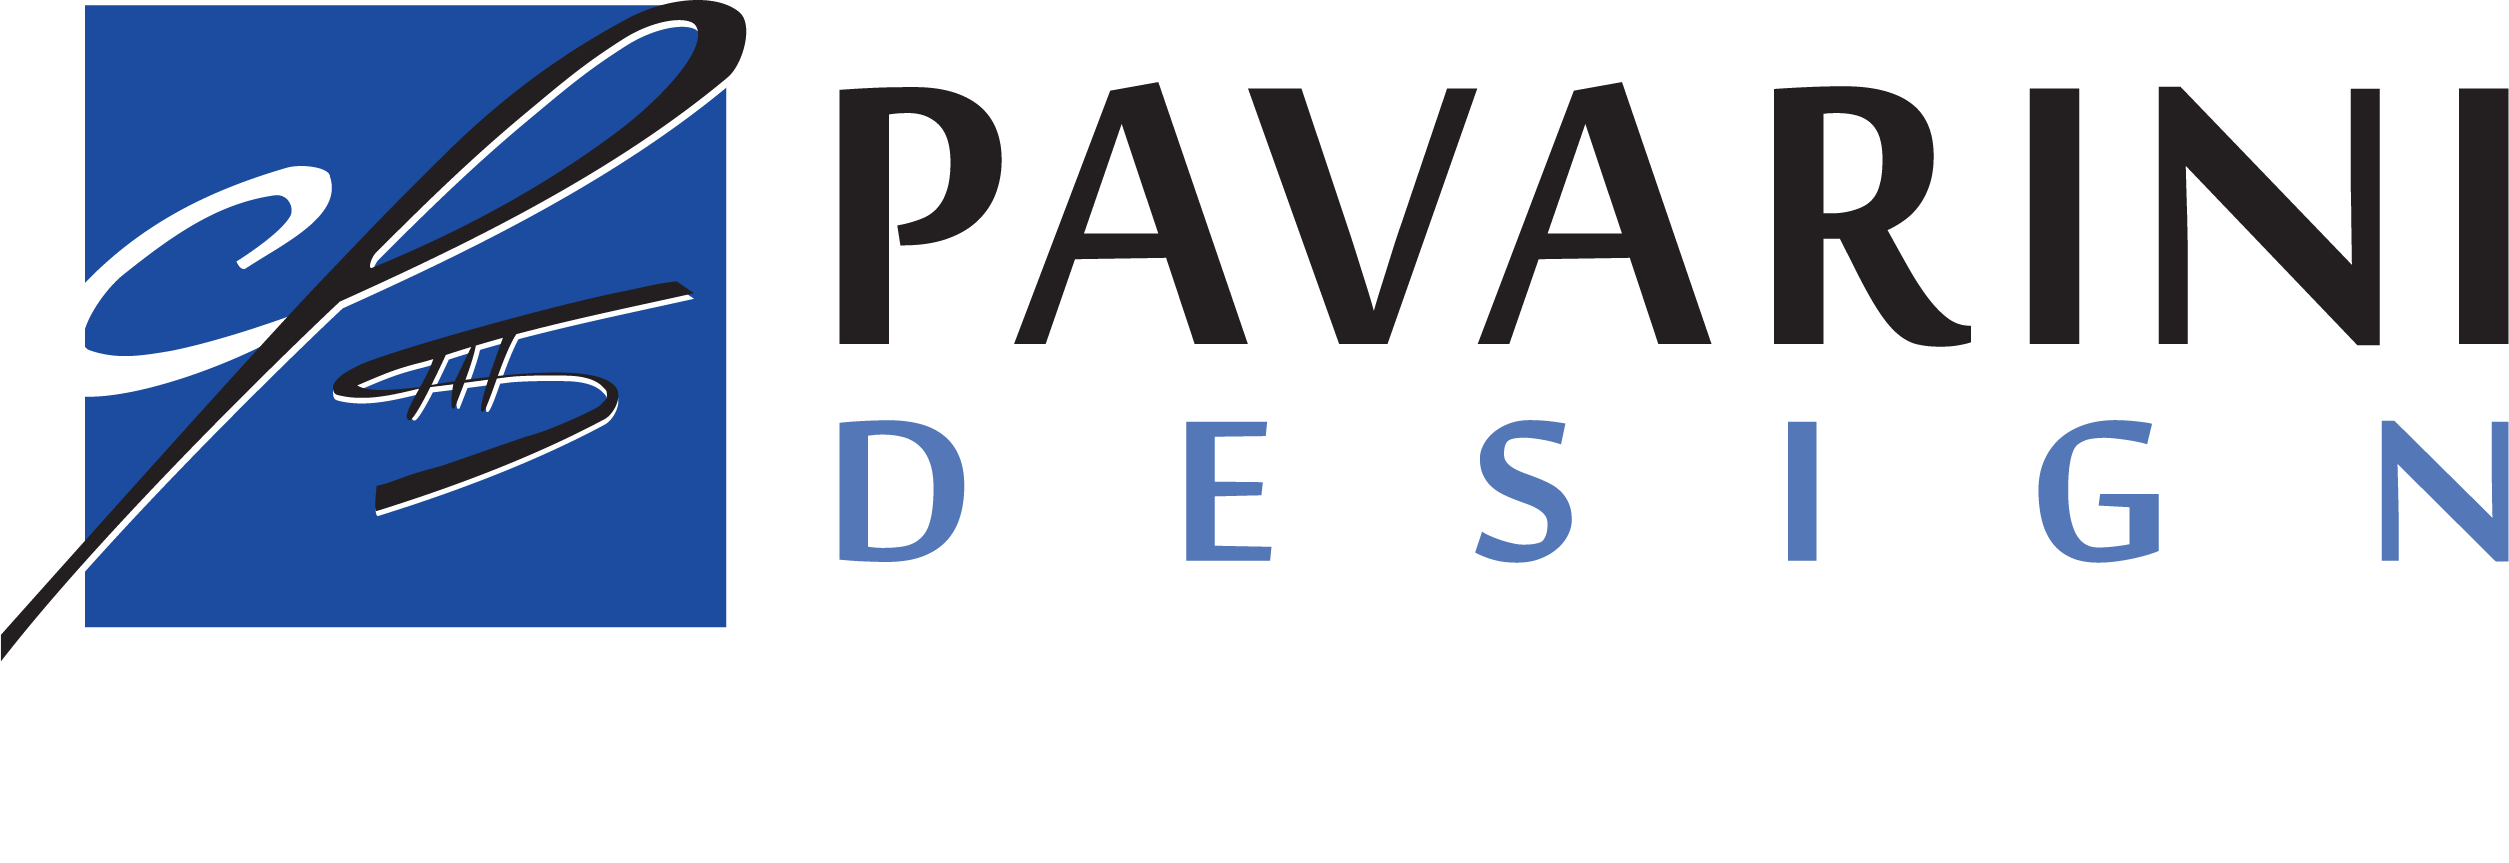 Pavarini Design Logo